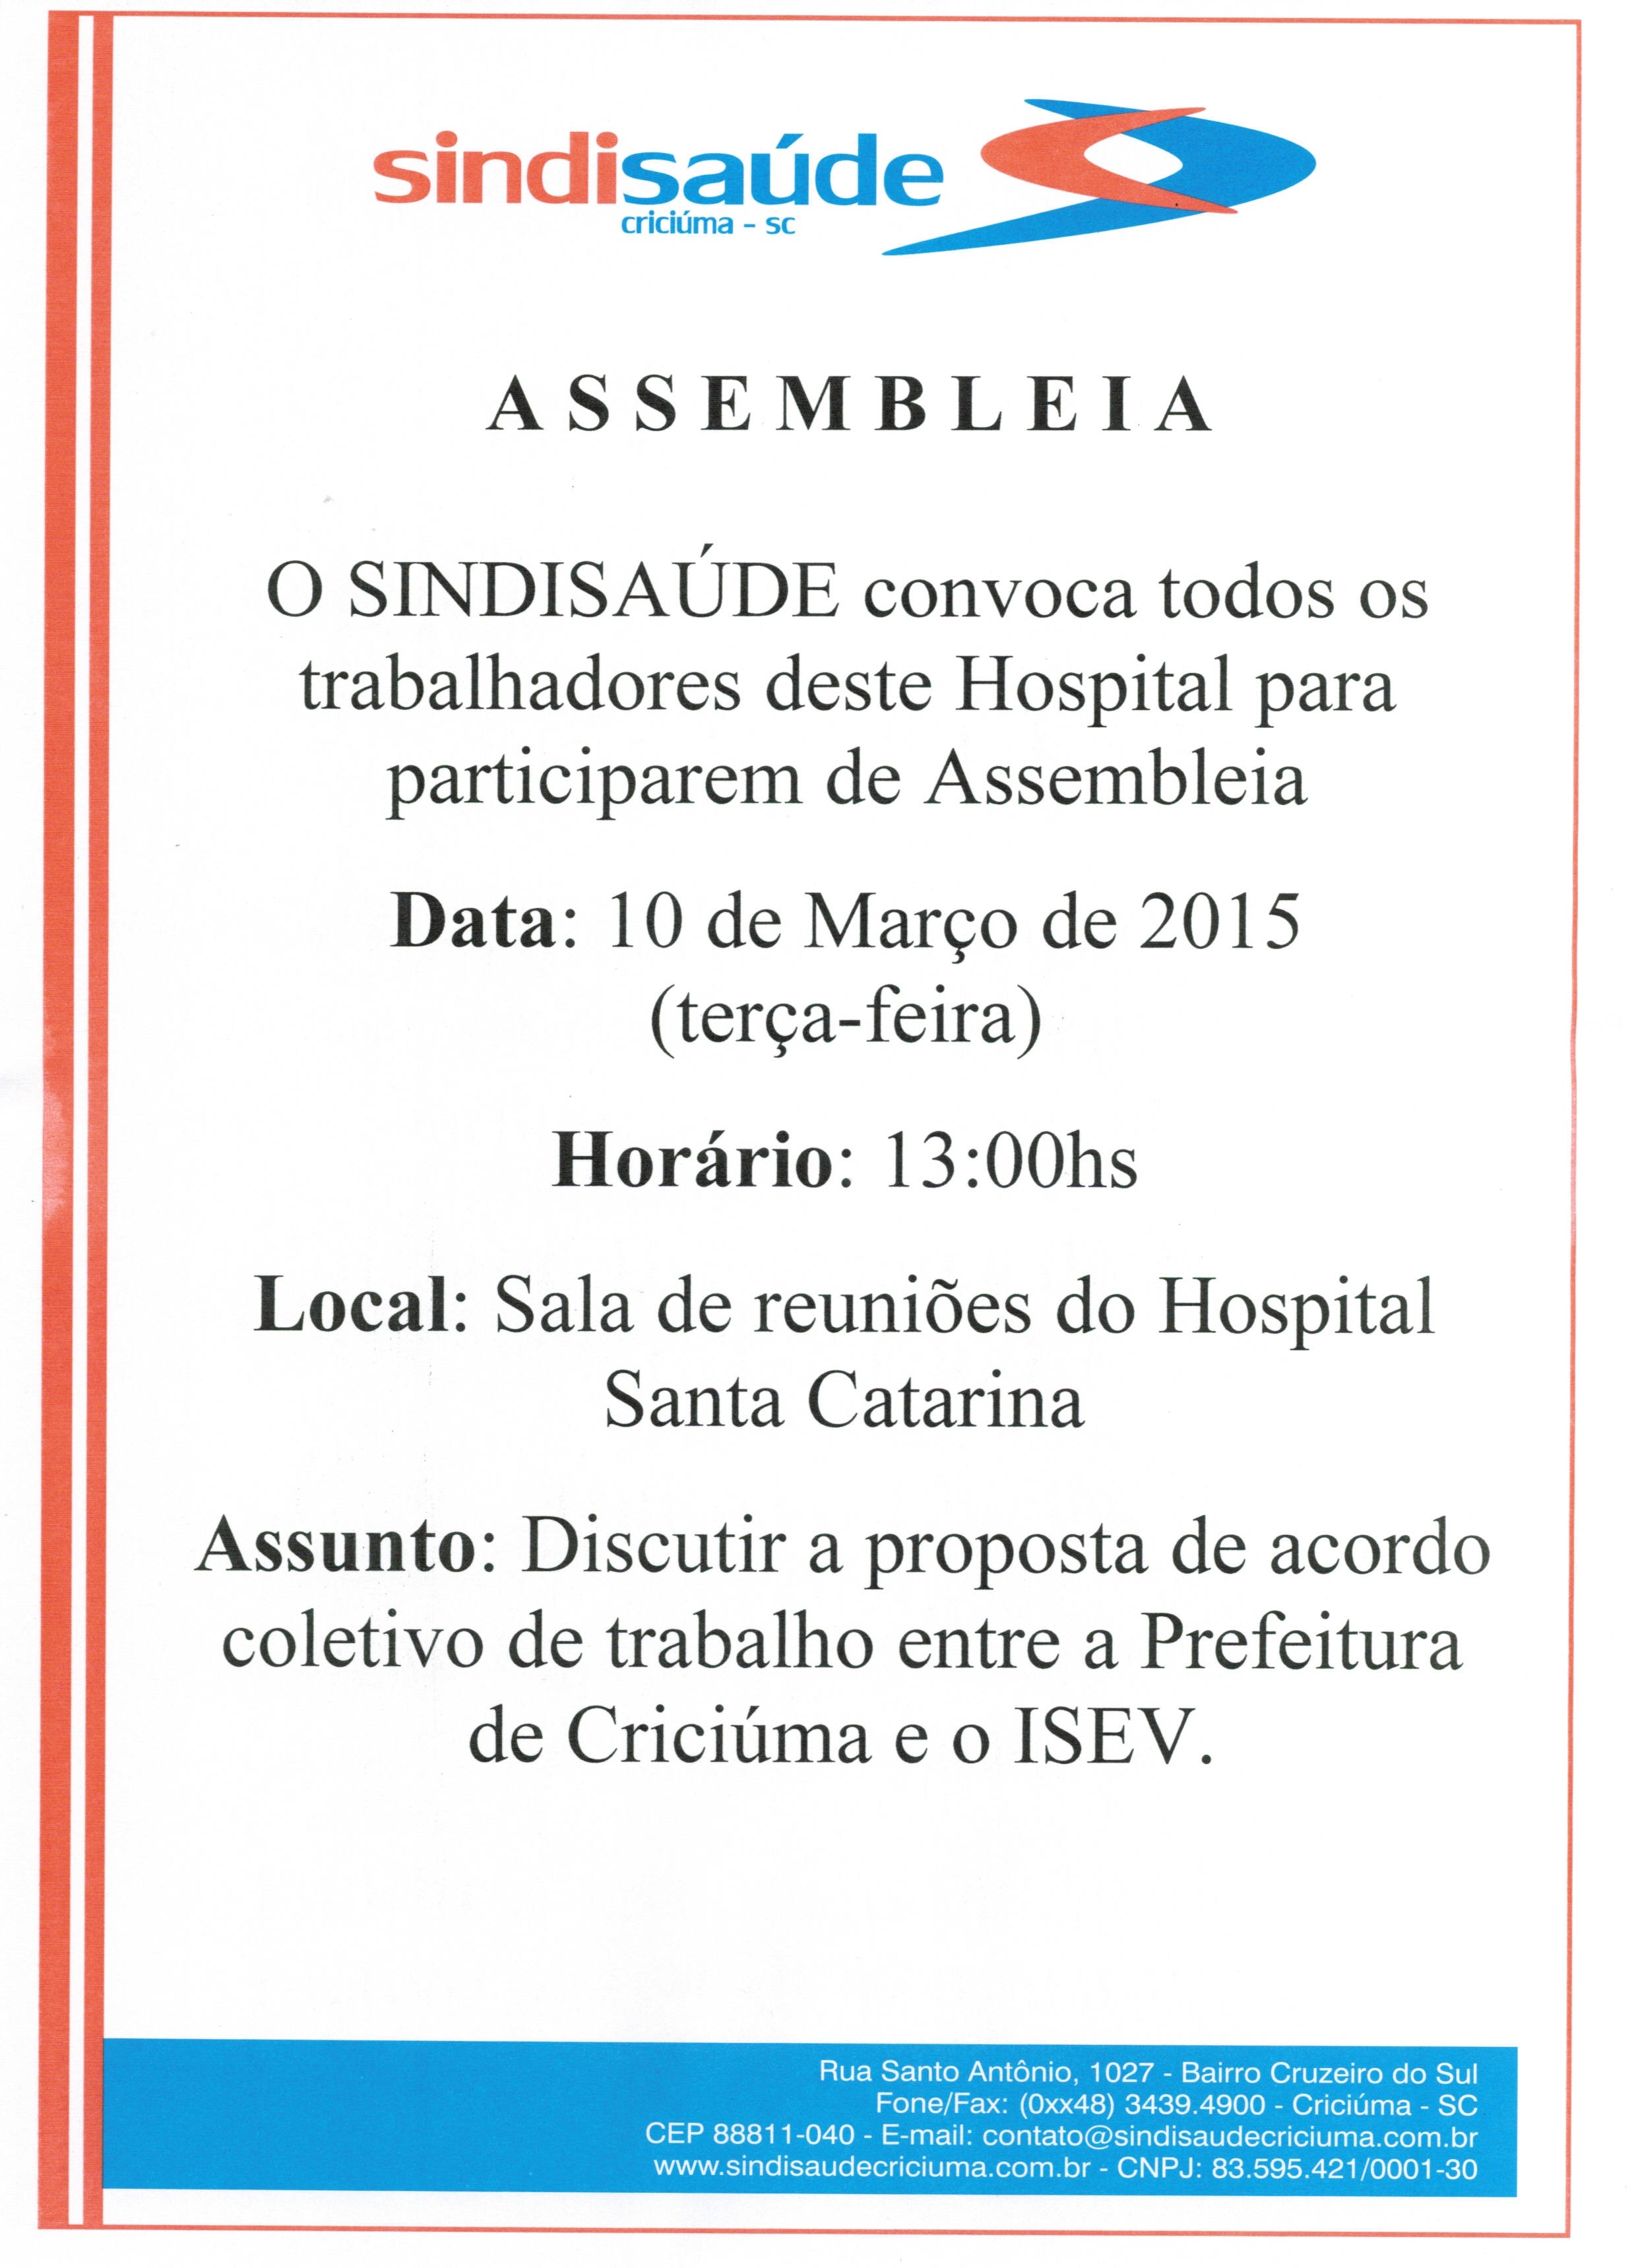 Assembléia Hospital Santa Catarina